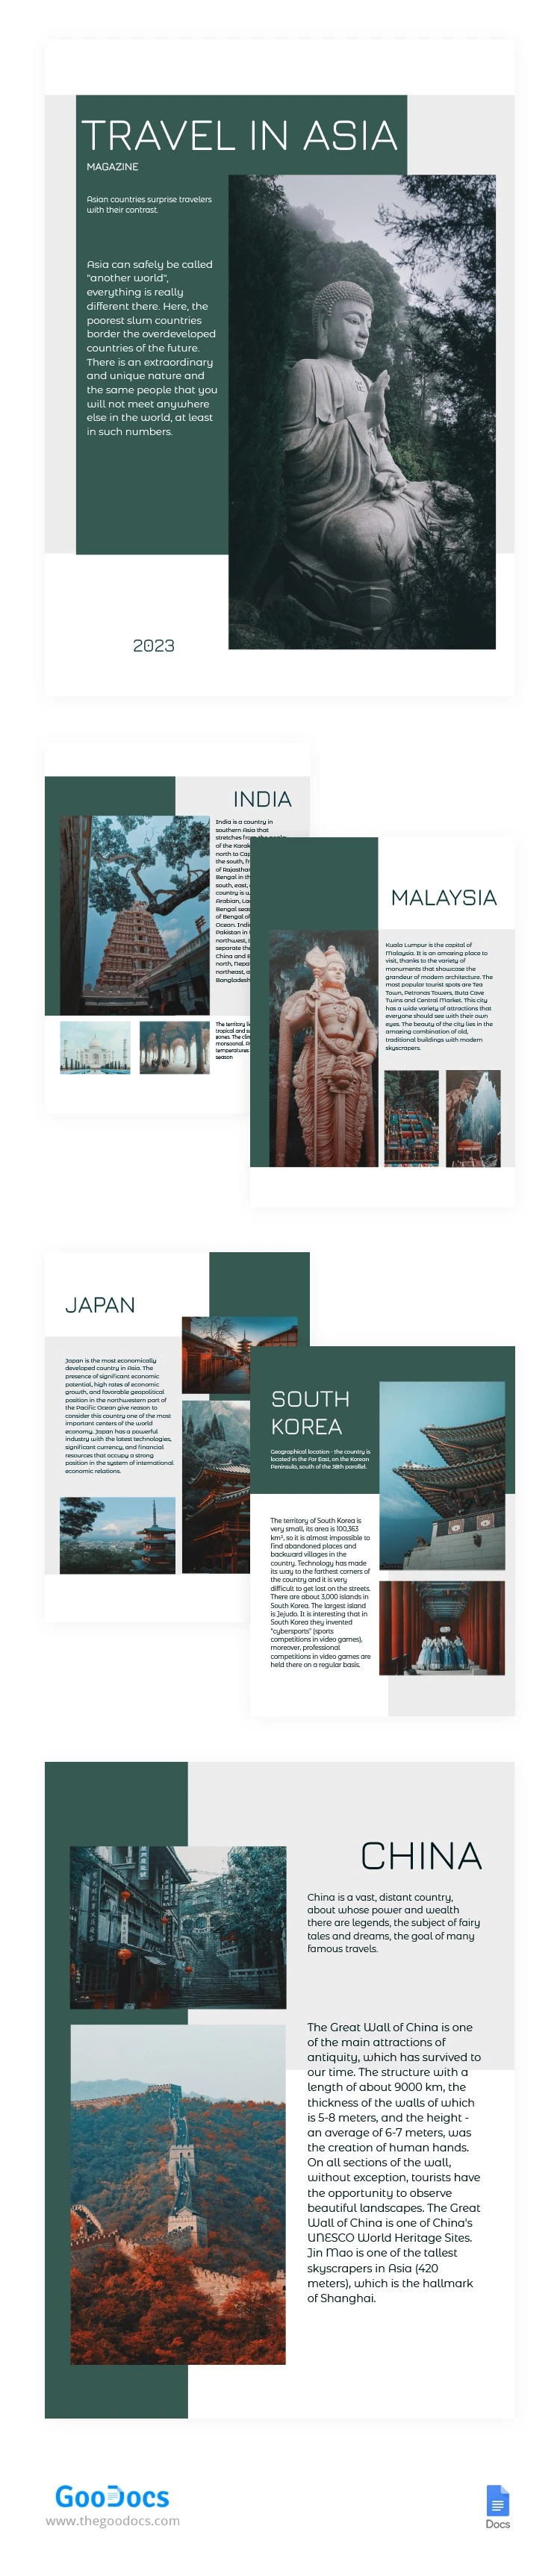 亚洲旅行杂志 - free Google Docs Template - 10064796